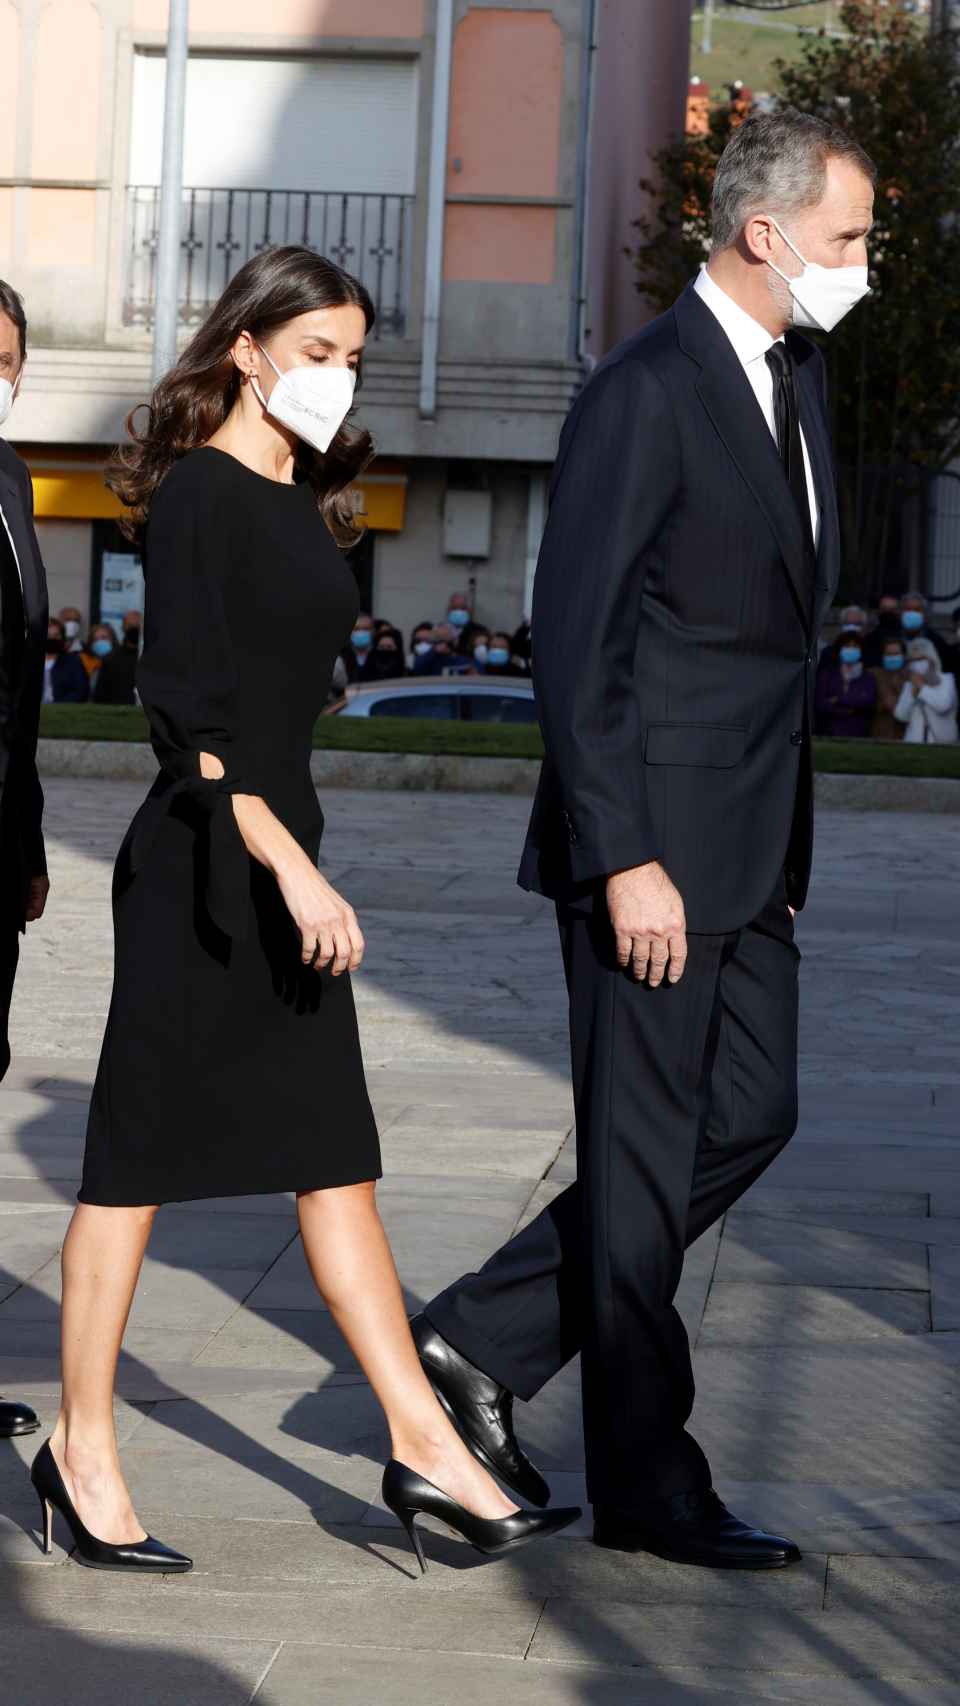 La reina Letizia ha vestido de negro, como marca el protocolo en este tipo de actos.